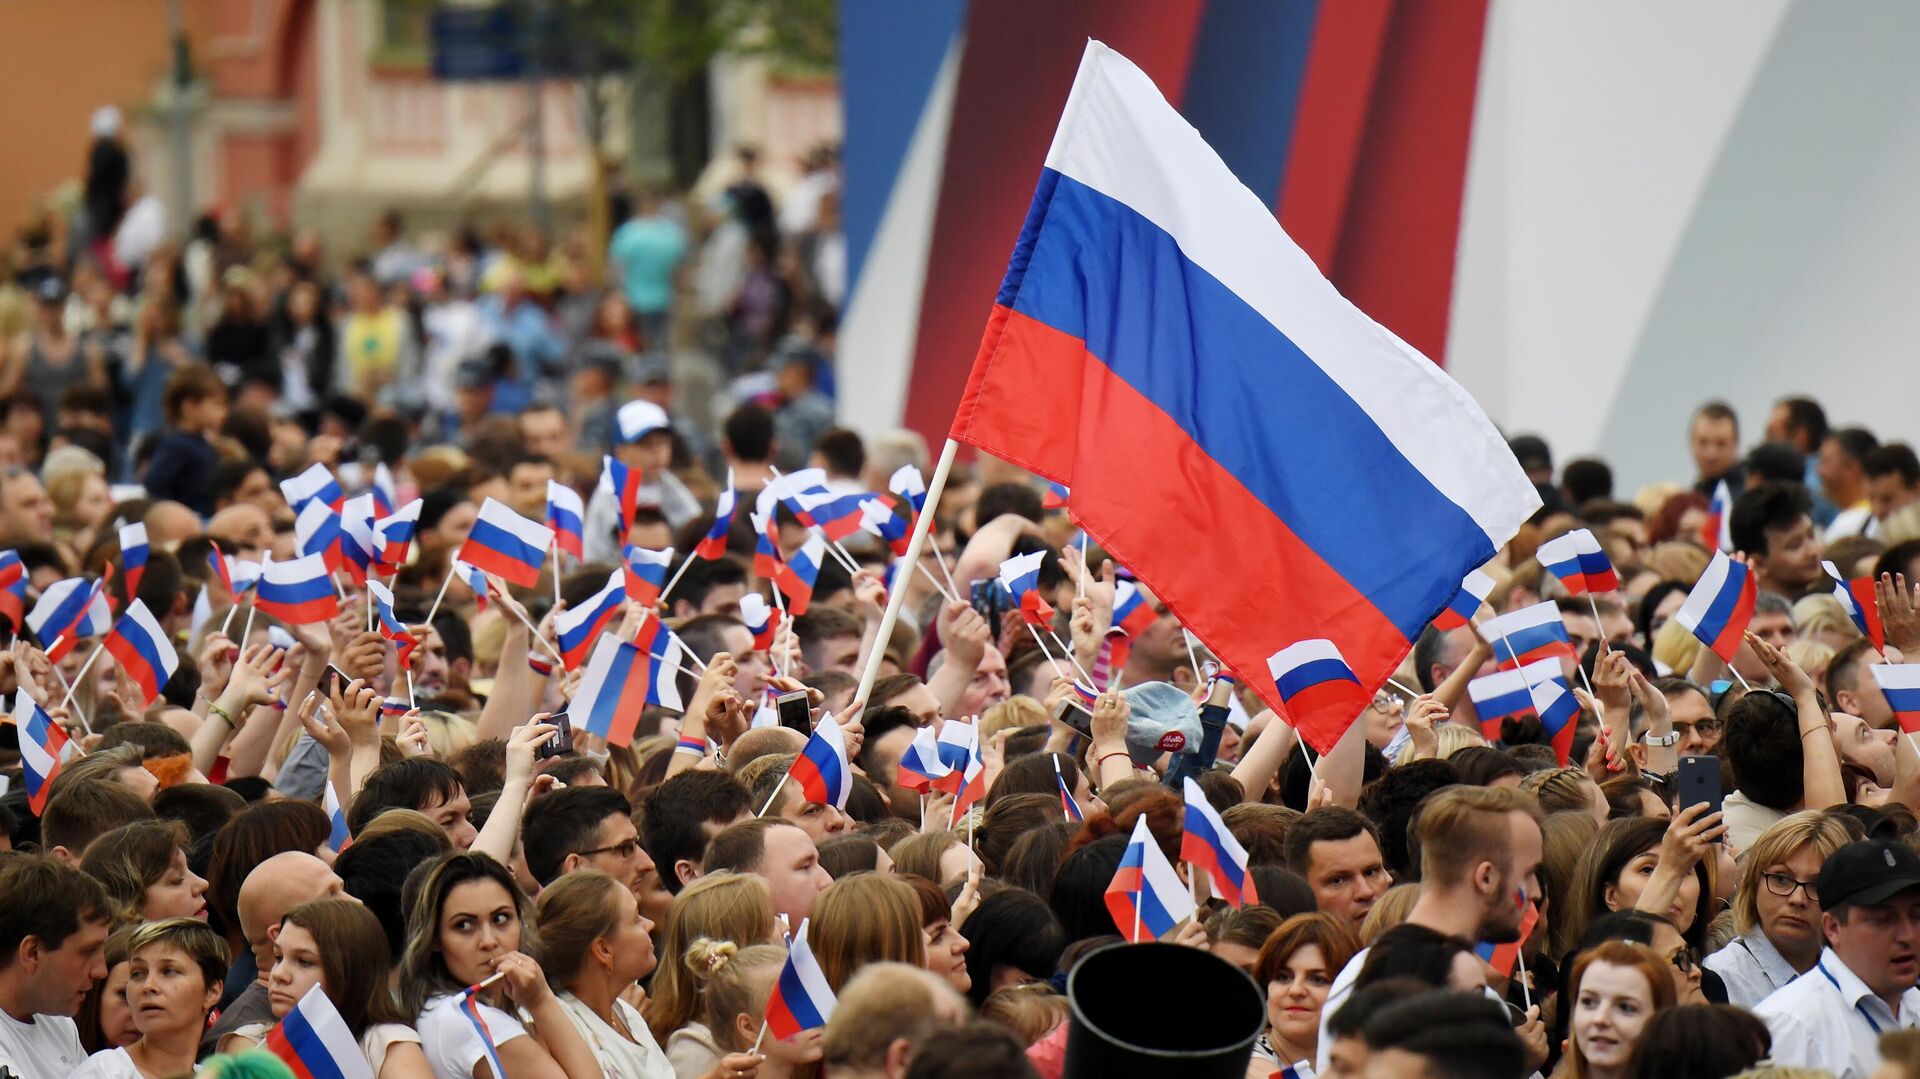 В России могут учредить День национальной гордости